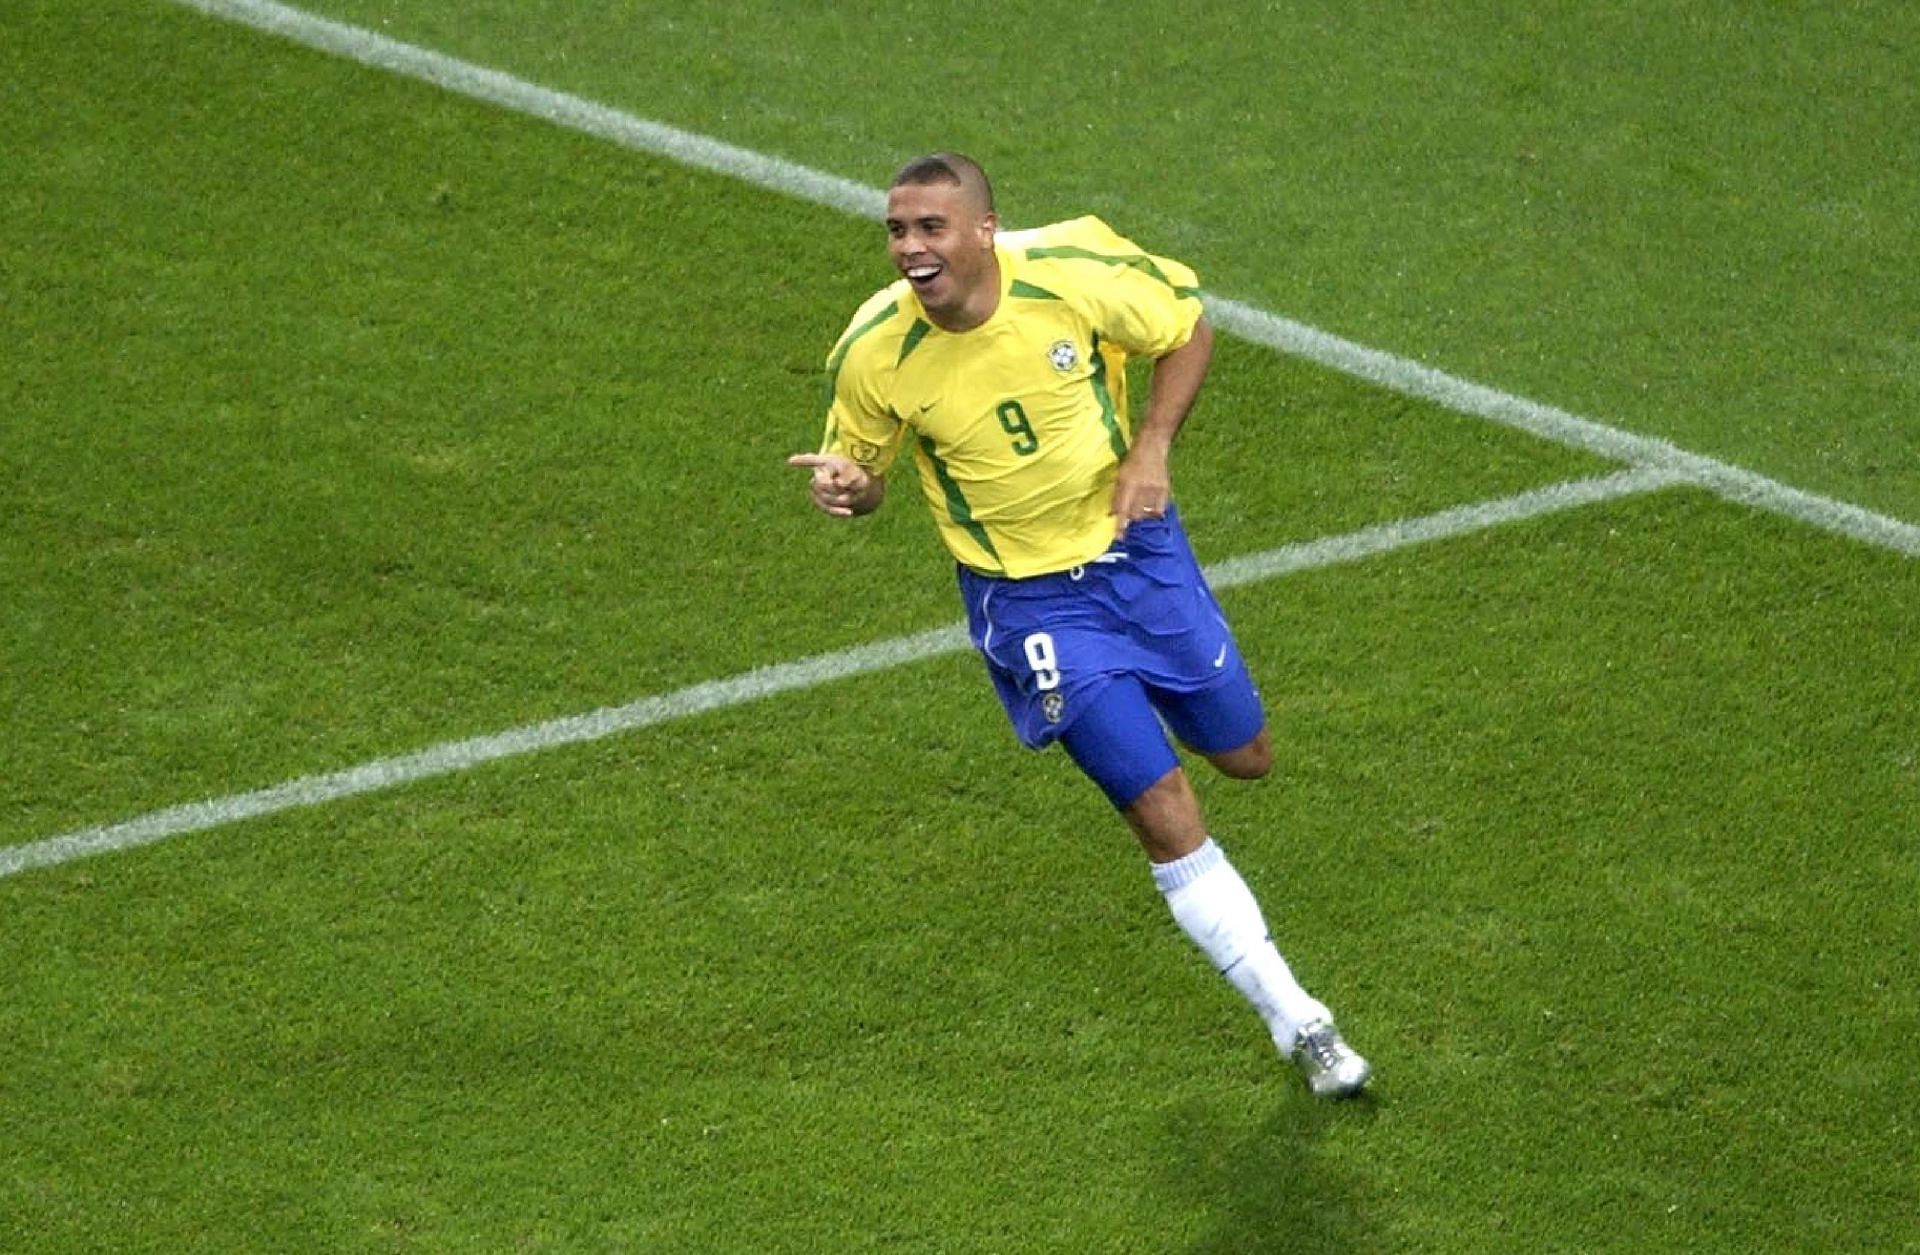 Foot : 1/2 Final Brazil - Turkey / FIFA World Cup 2002